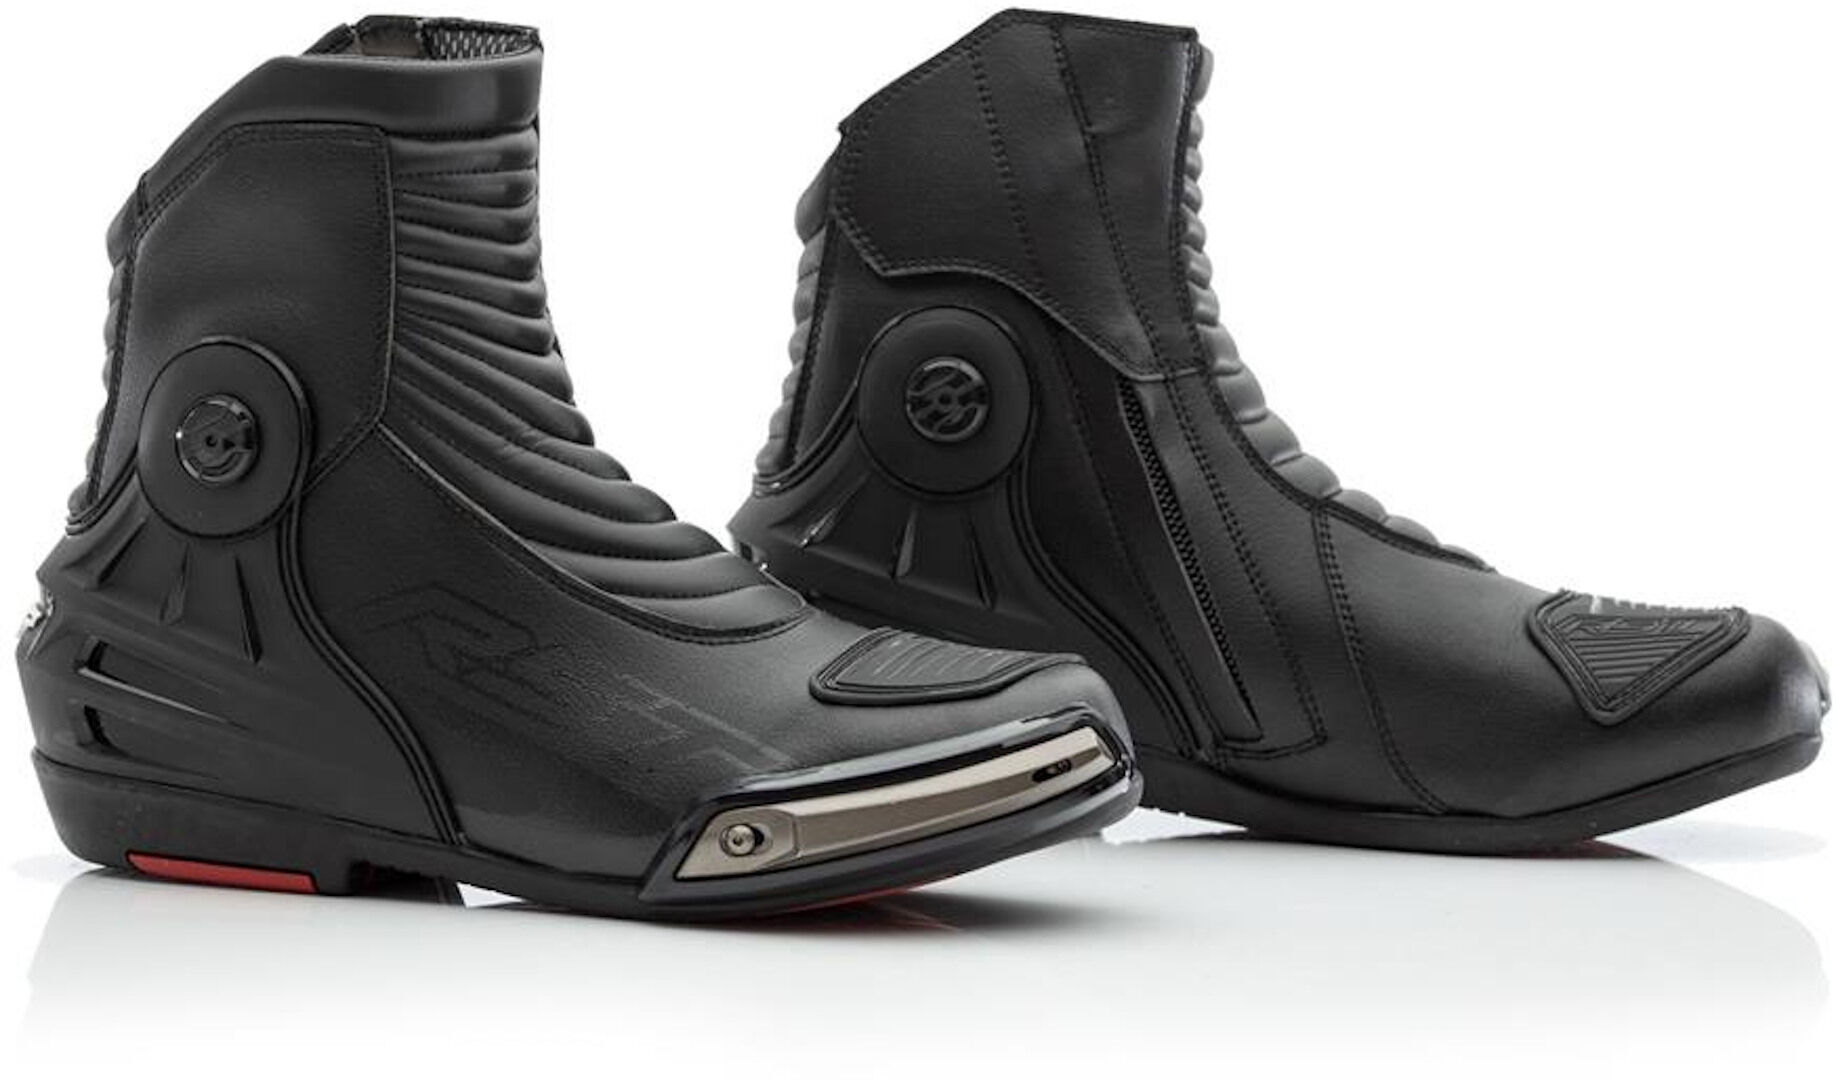 RST Tractech Evo 3 WP Zapatos de motocicleta - Negro (48)